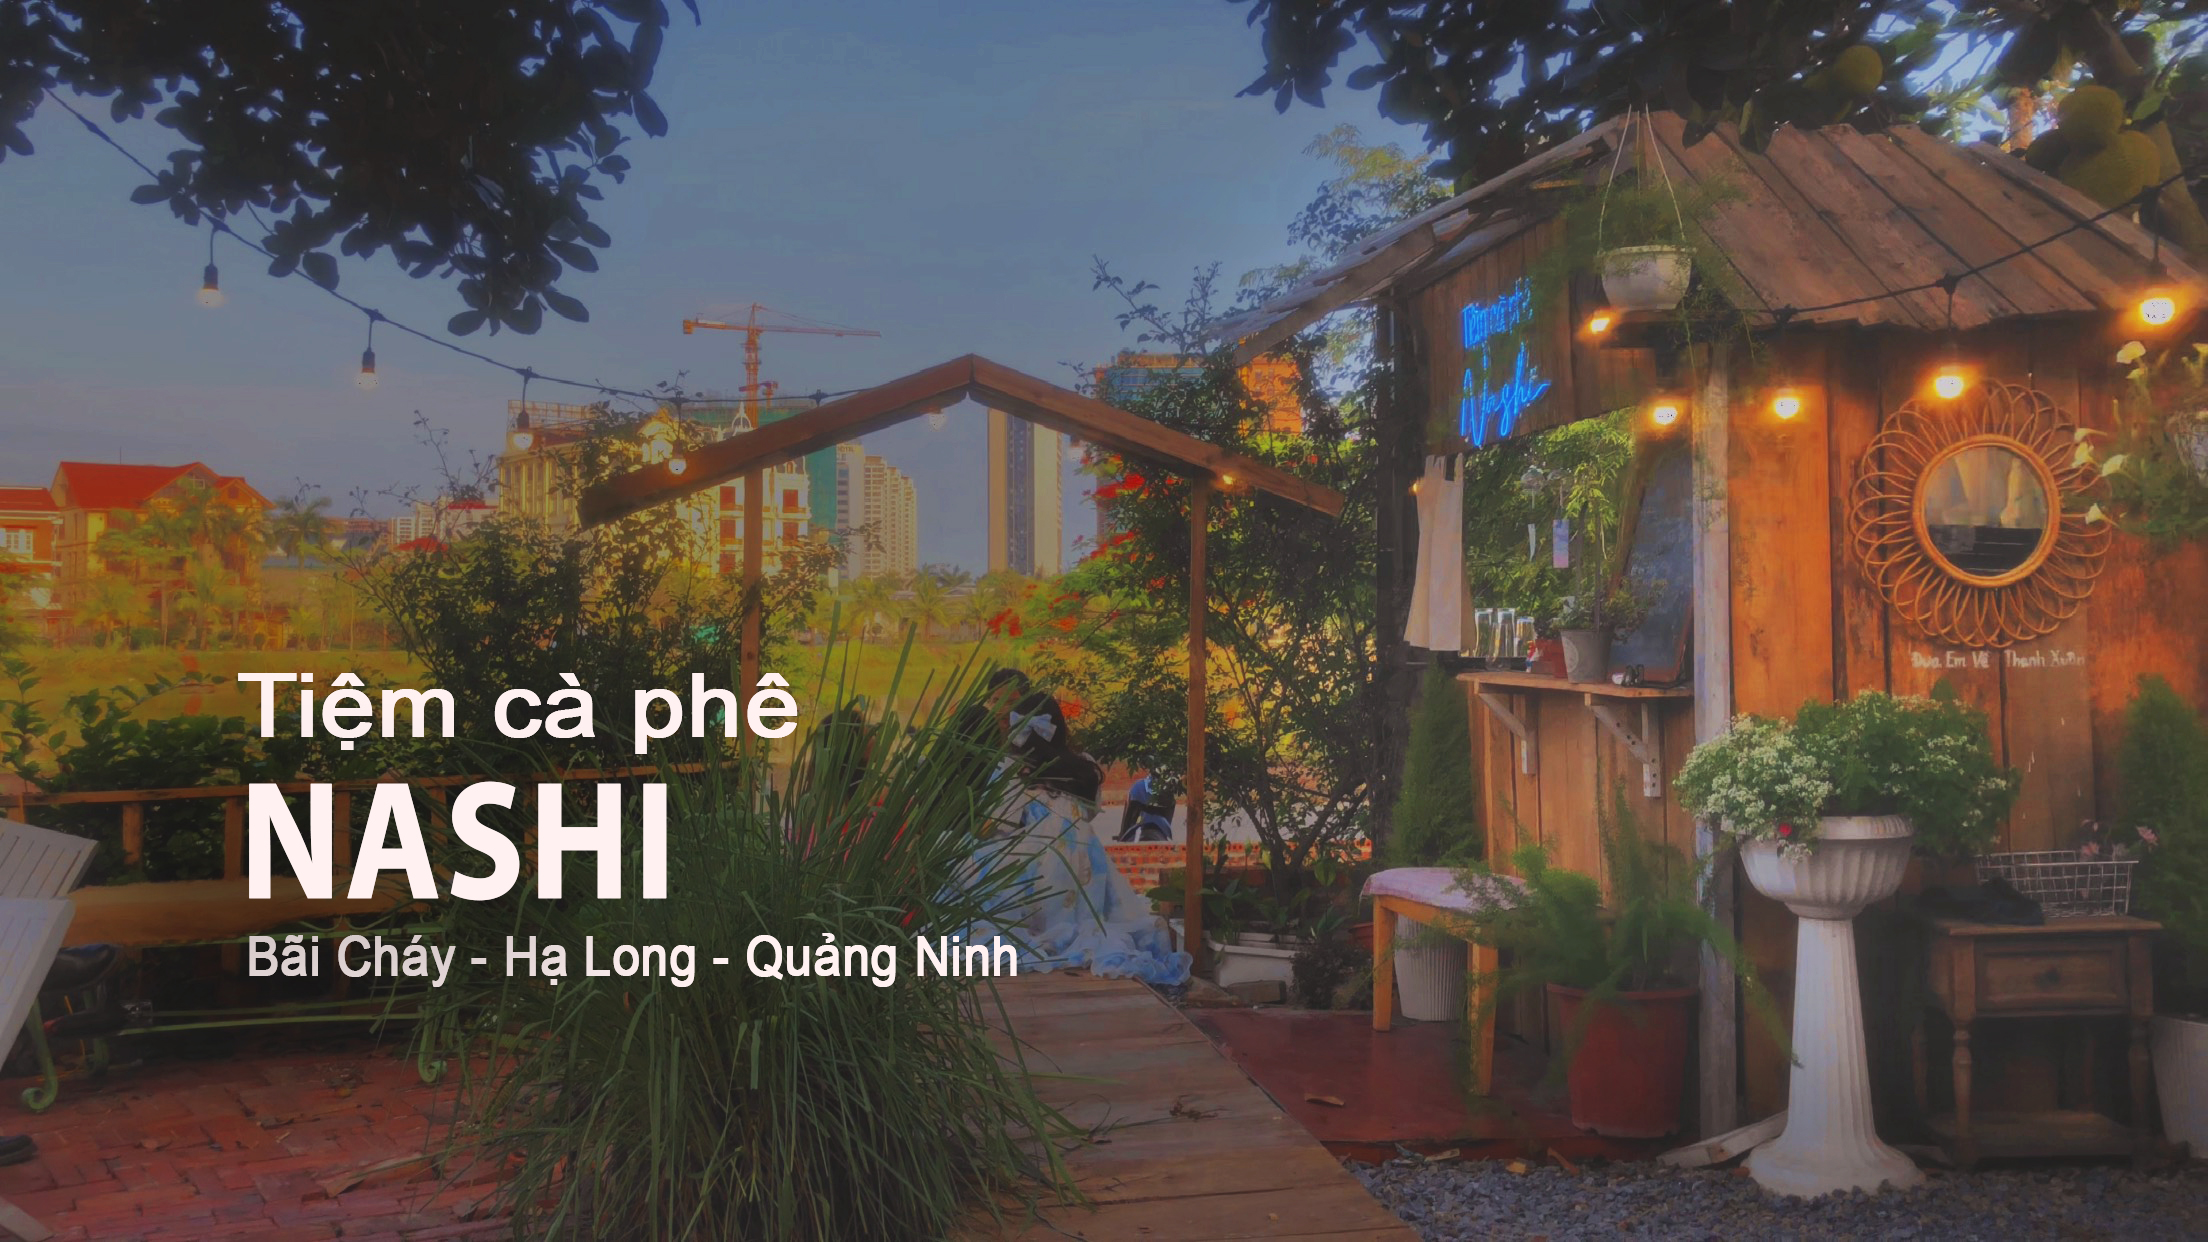 Khám phá phong cách thiết kế và không gian tiệm cà phê NASHI ở Bãi Cháy - Hạ Long - Quảng Ninh